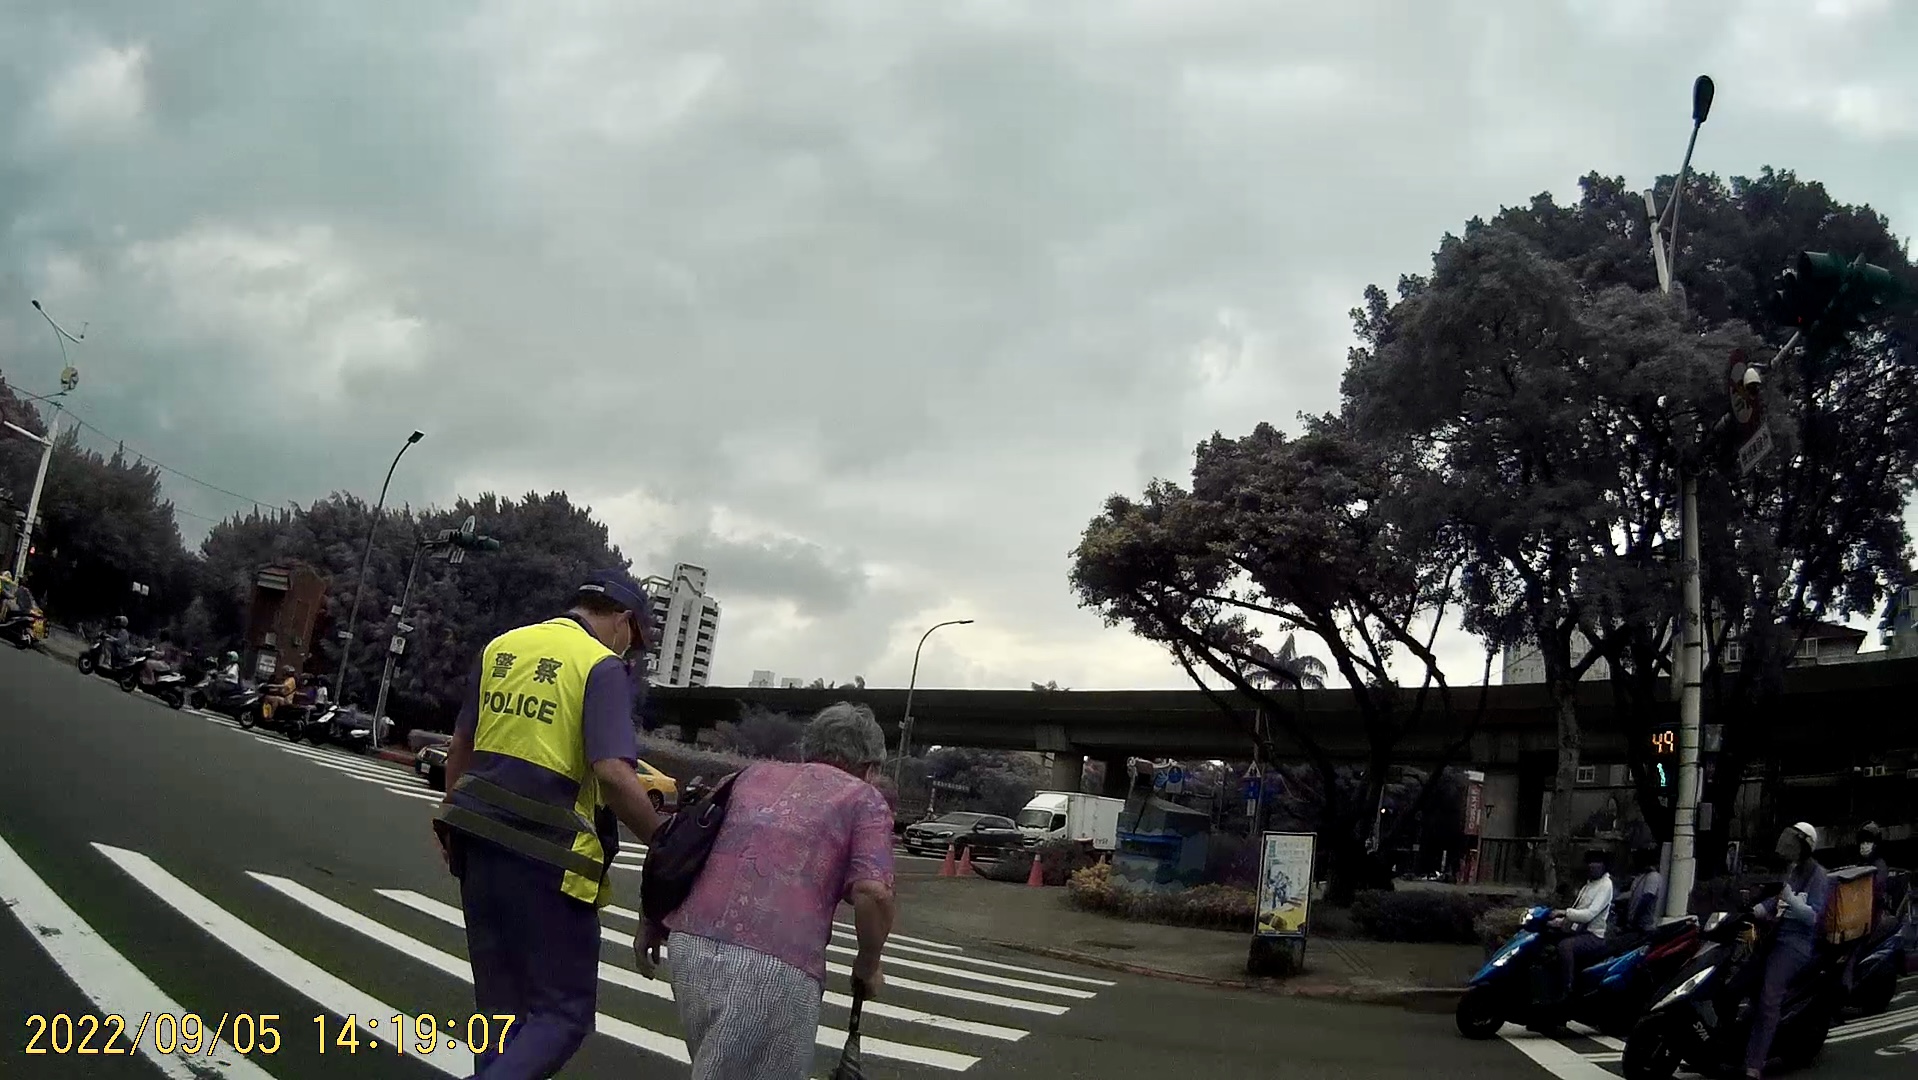 照片3-臺北市保安警察大隊吳中隊長迅速下車攙扶老婦人，等行人號誌綠燈後陪同過馬路至安全處。